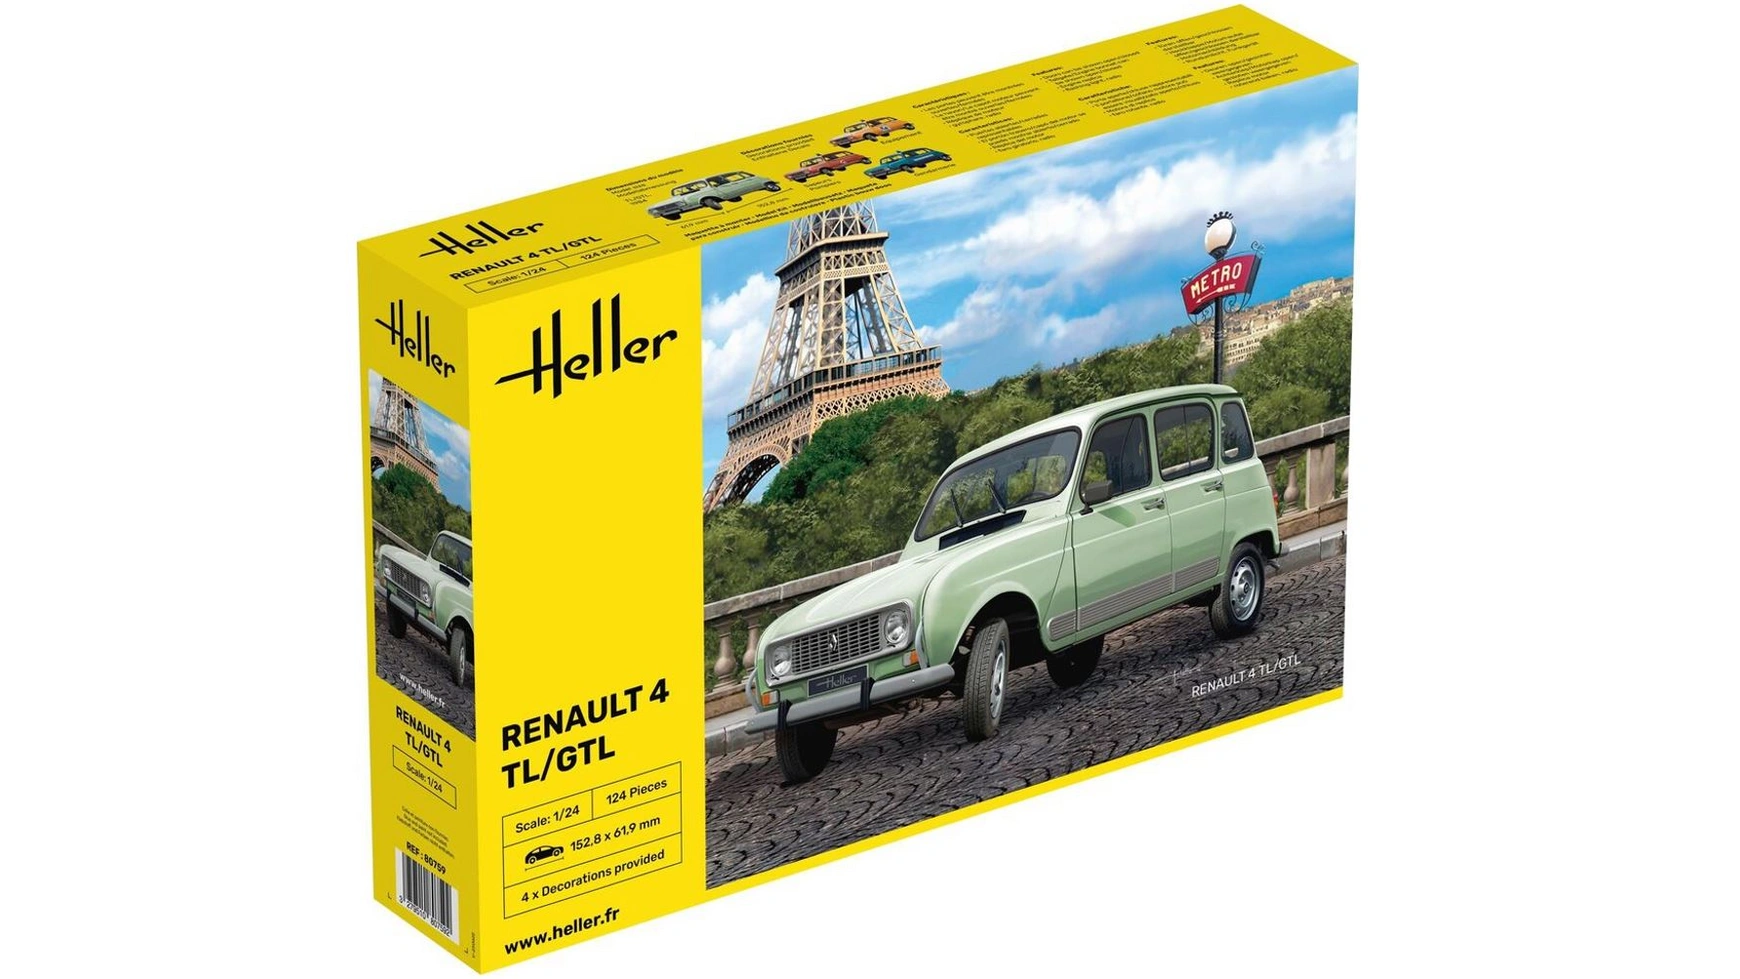 Renault 4tl/gtl Heller